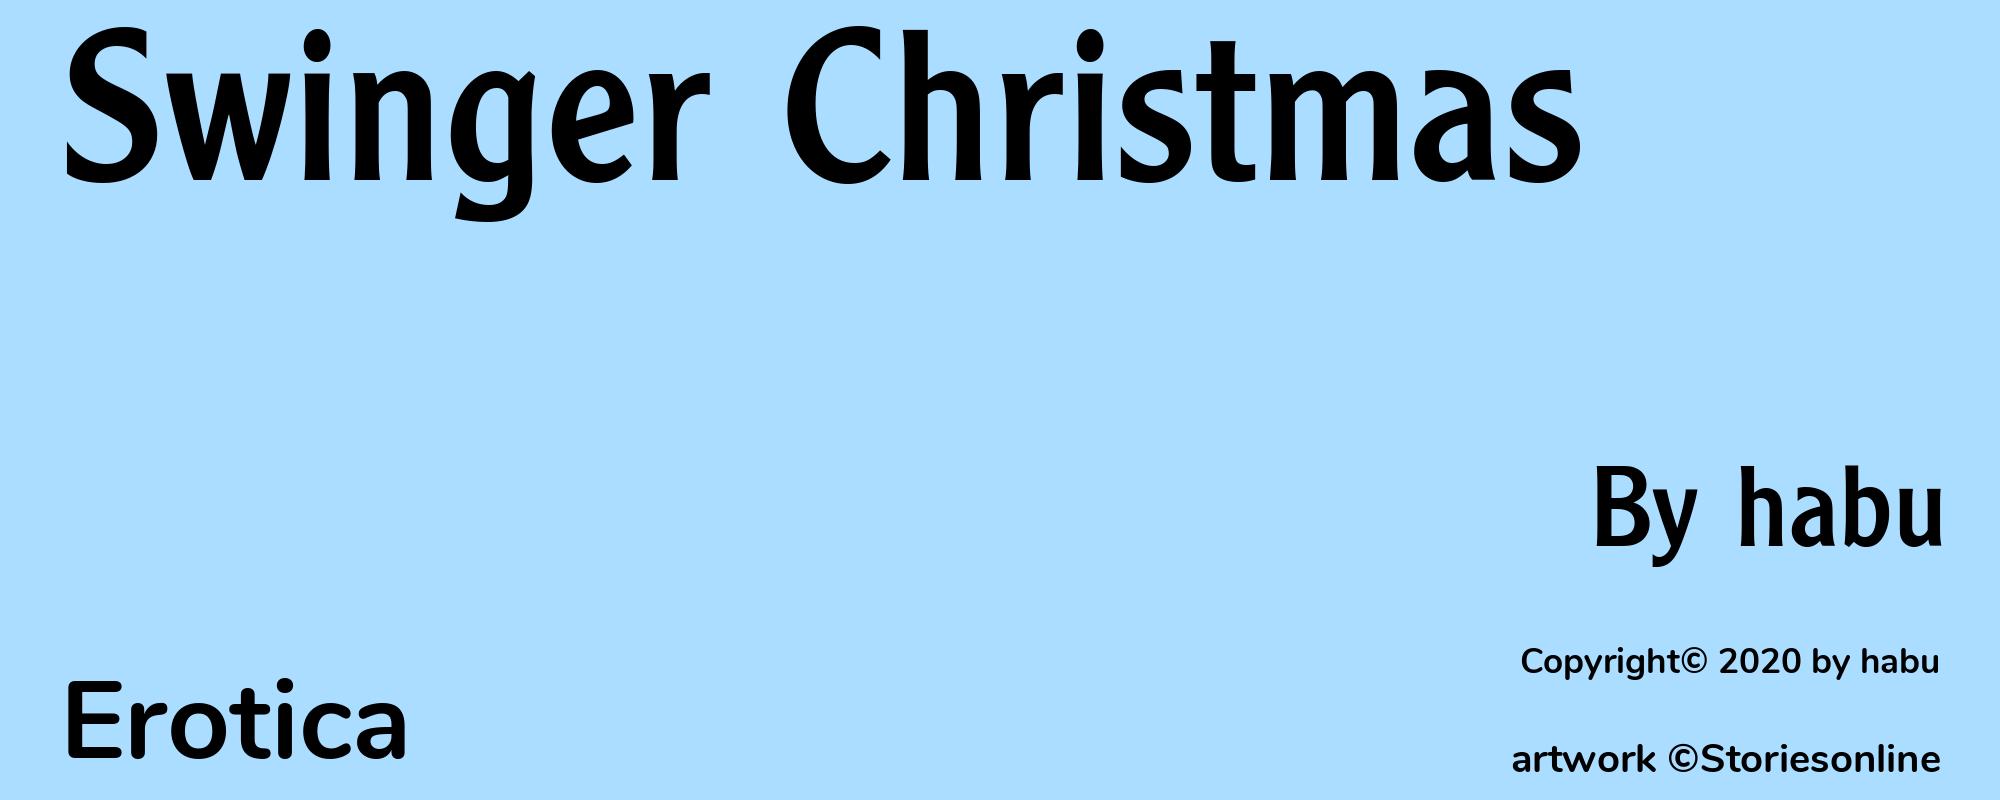 Swinger Christmas - Cover